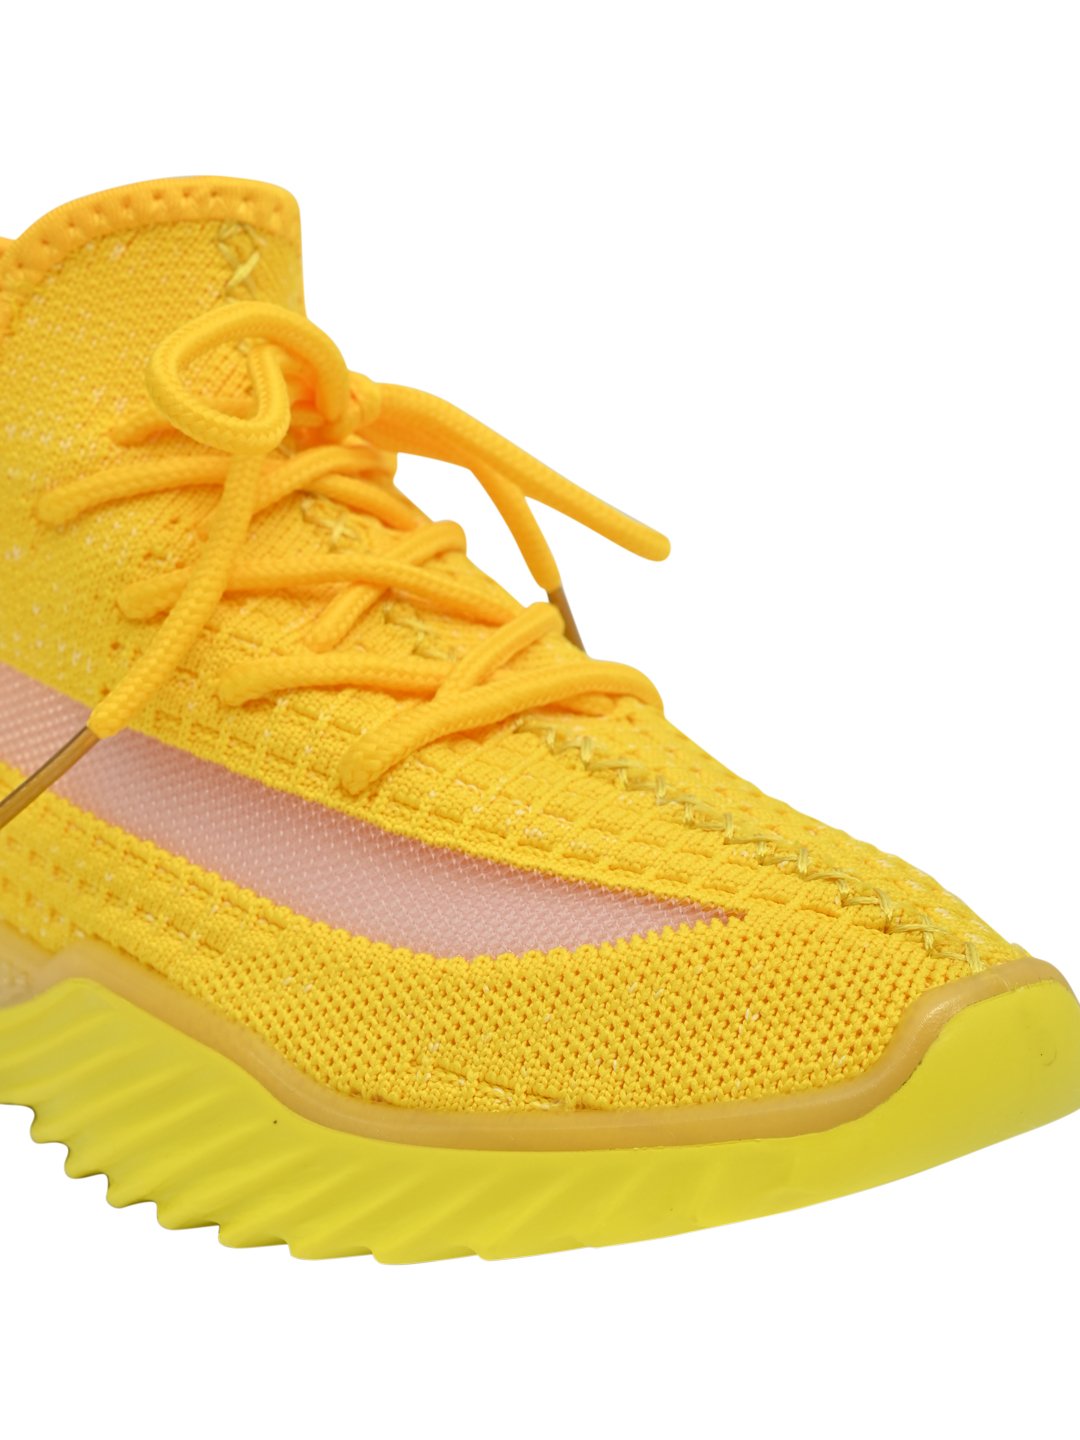 Footwear, Women Footwear, Yellow Sneakers